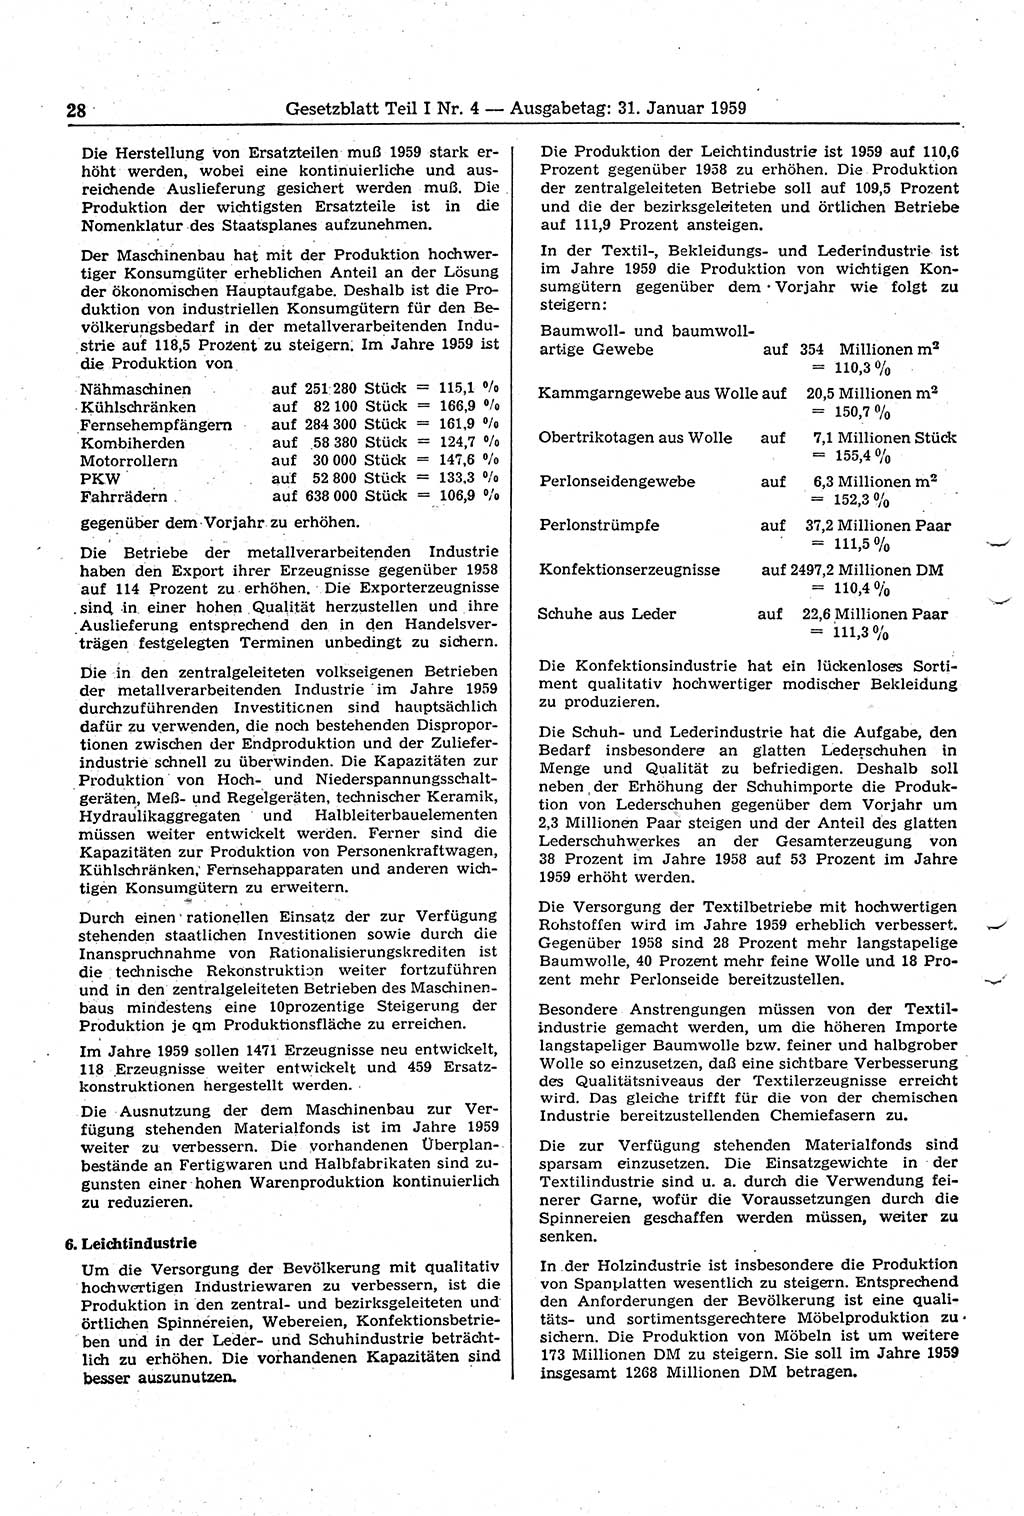 Gesetzblatt (GBl.) der Deutschen Demokratischen Republik (DDR) Teil Ⅰ 1959, Seite 28 (GBl. DDR Ⅰ 1959, S. 28)